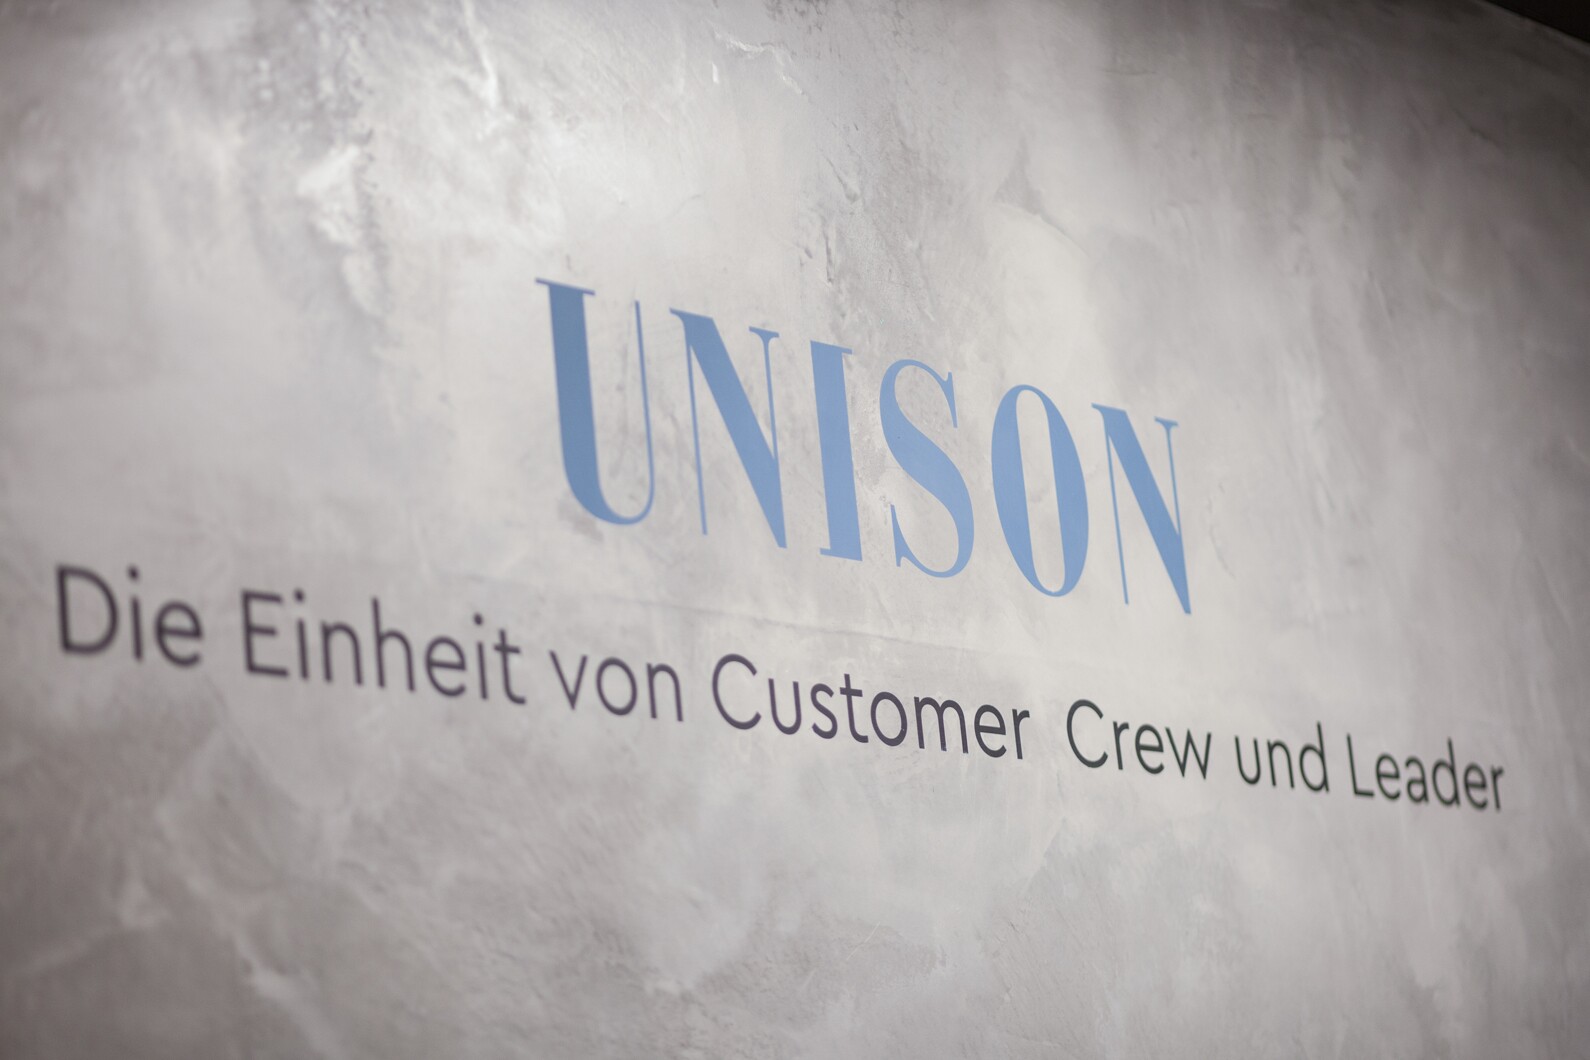 der Schriftzug "UNISON - Die Einheit von Customer Crew und Leader" auf einer Wand im Beton Look